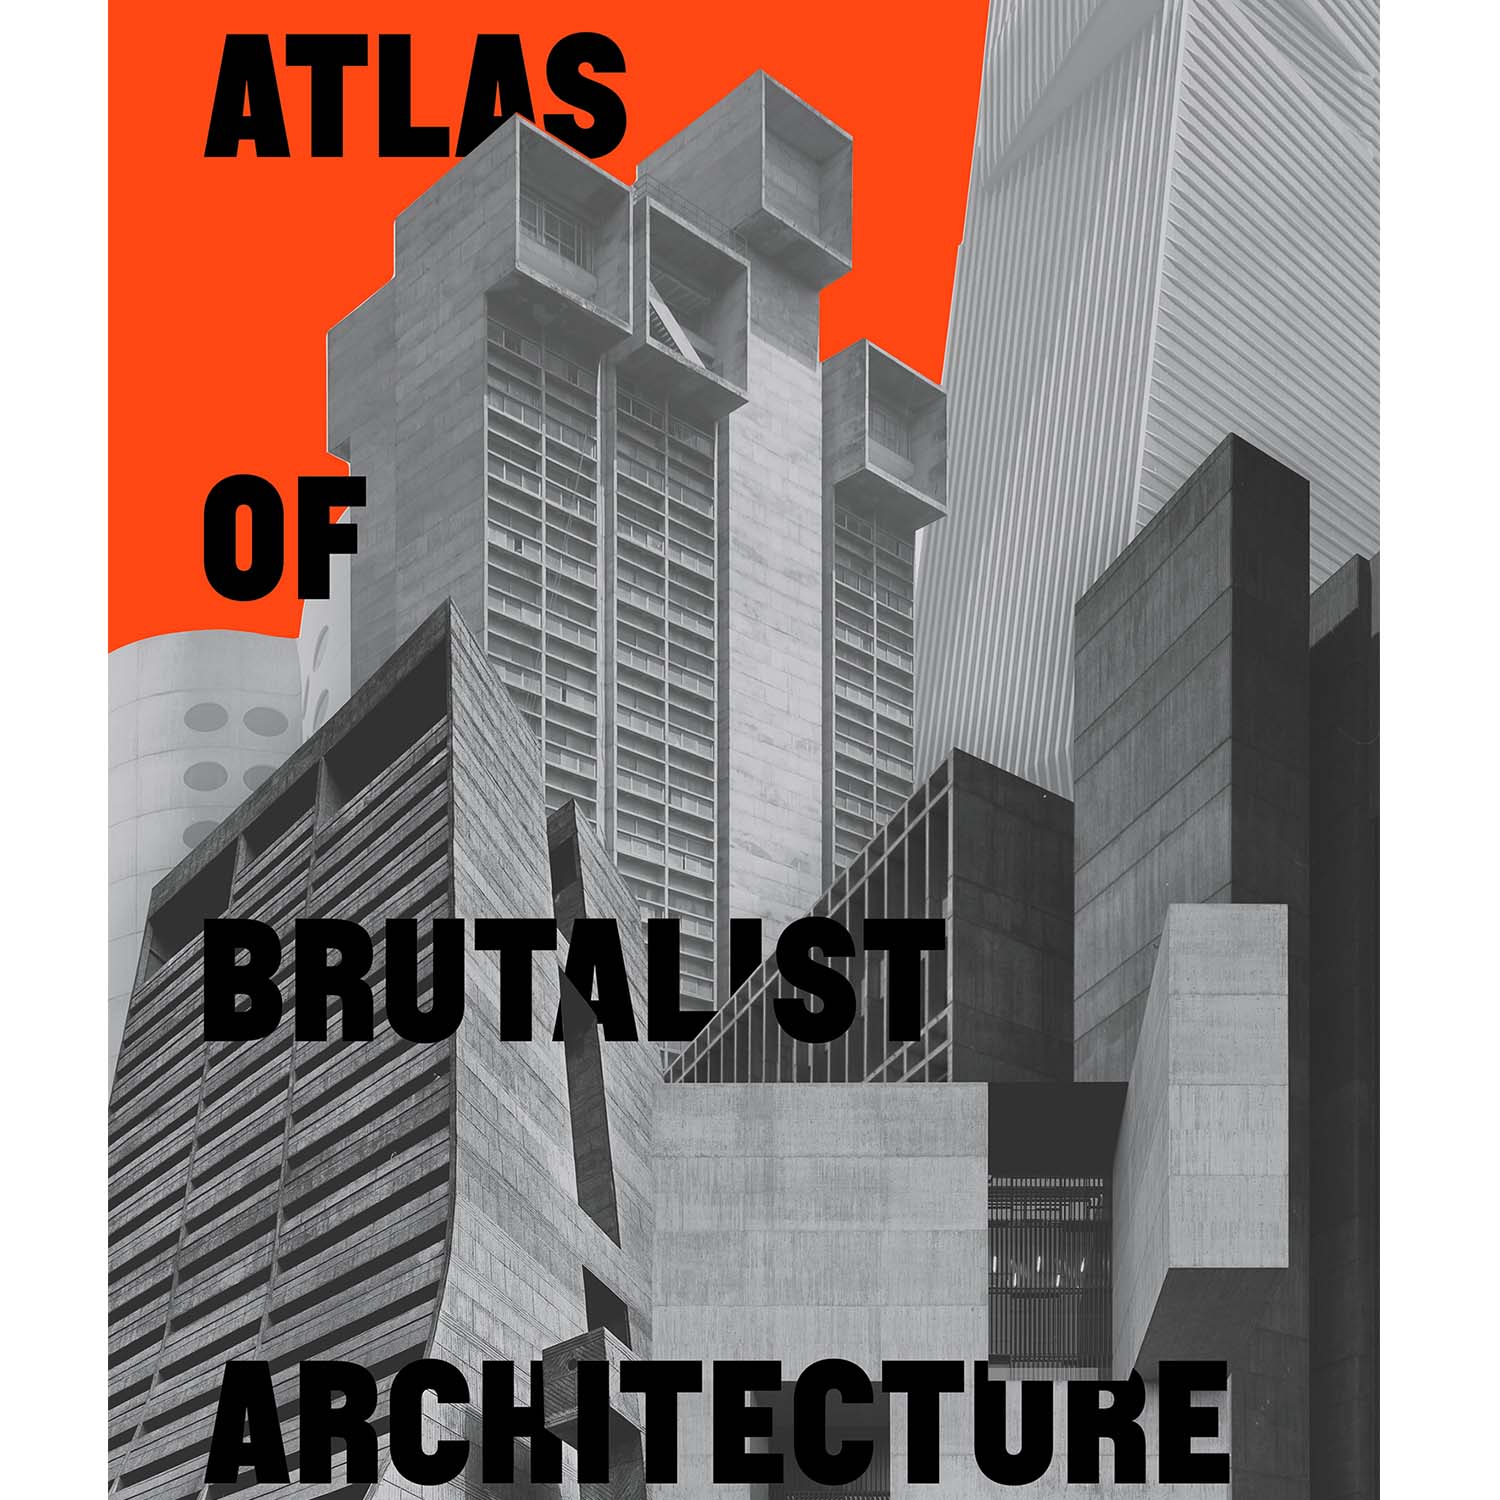 क्रूरतावादी वास्तुकला का एटलस की तस्वीर